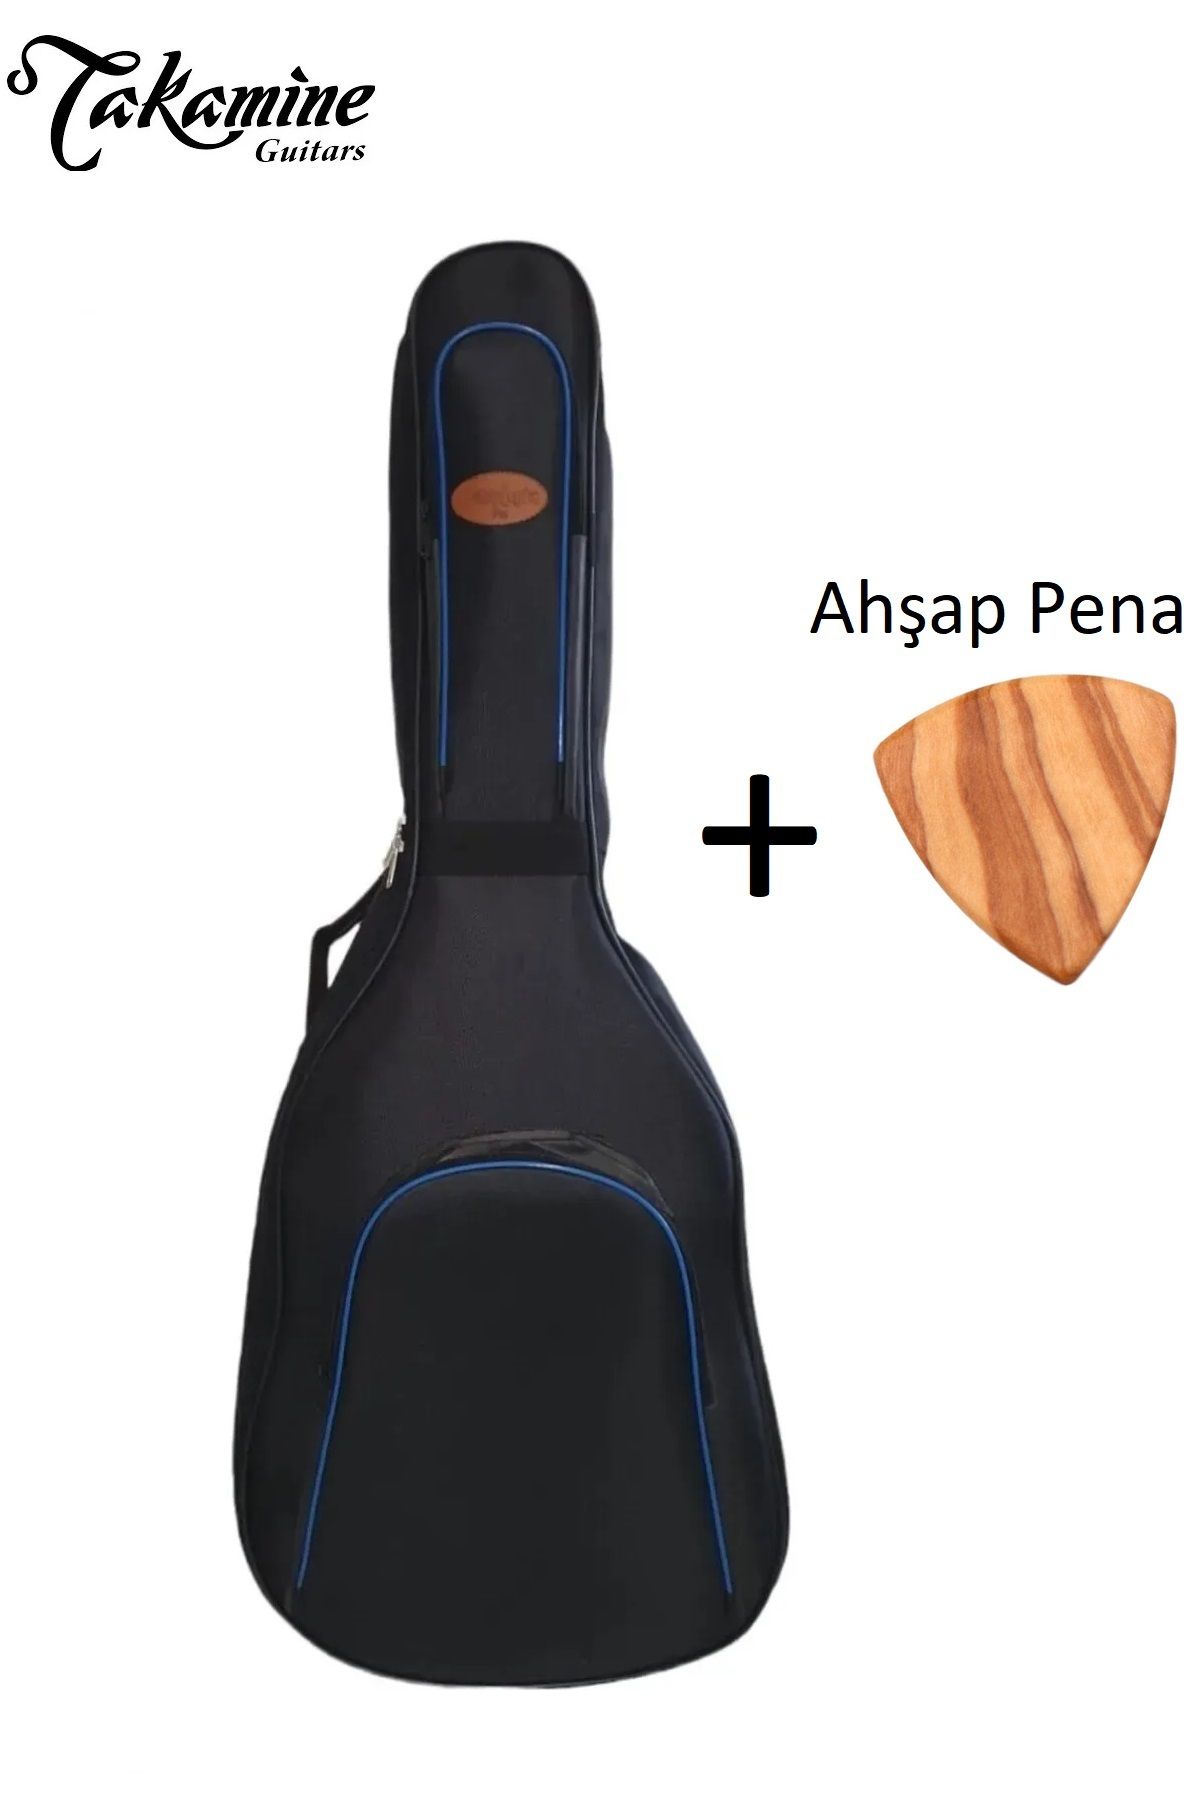 Donizetti Ultra Yüksek Koruma Takamine Klasik Gitar Kılıfı Taşıma Çantası Gigbag Soft Case